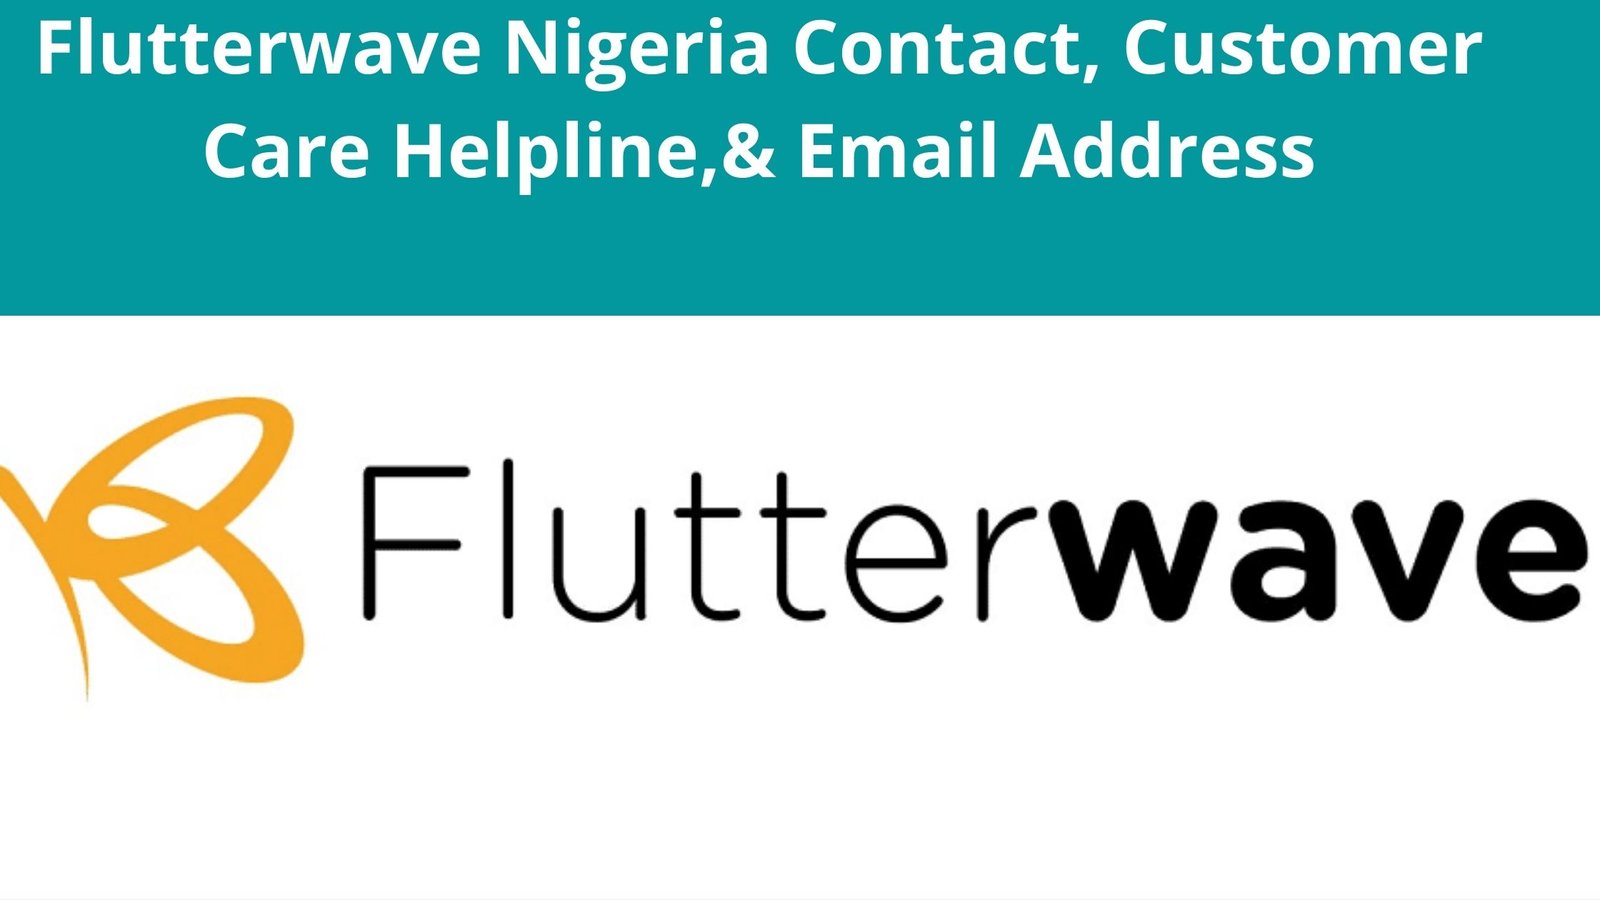 Flutterwave Nigeria Contact